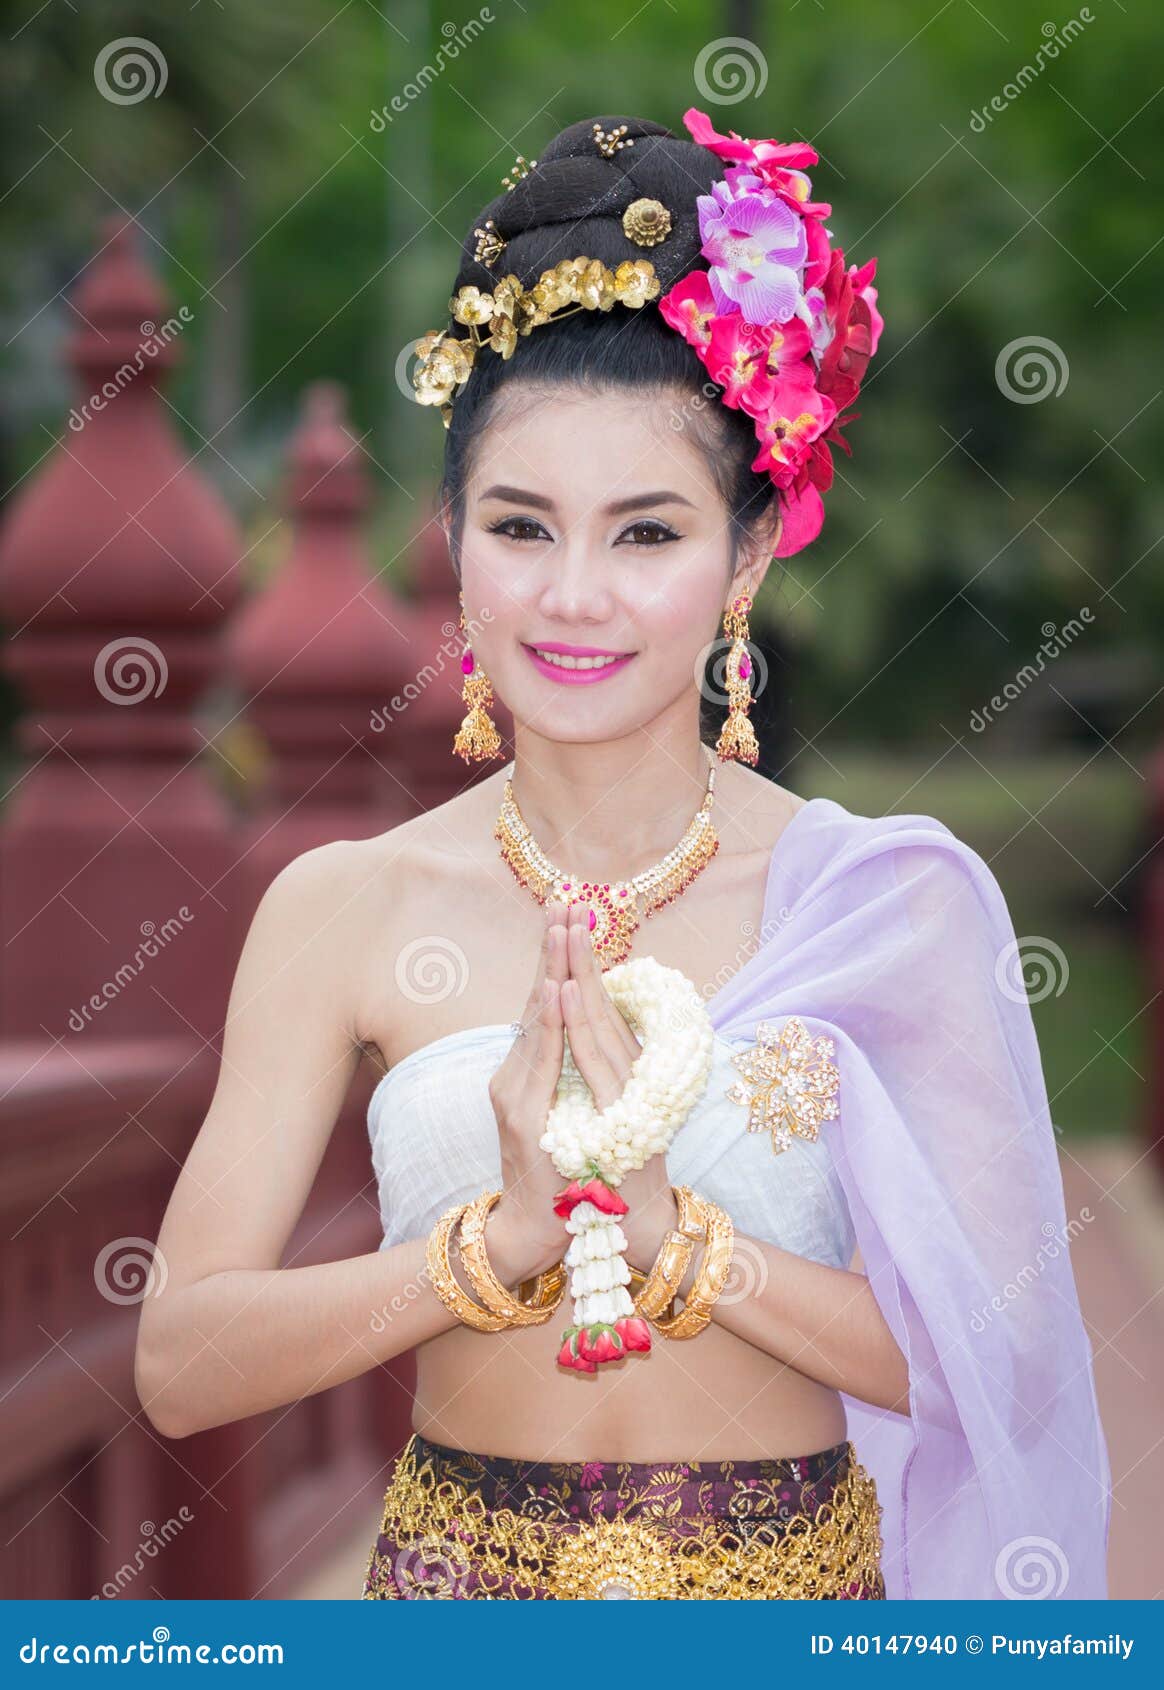 Thailandische single frauen